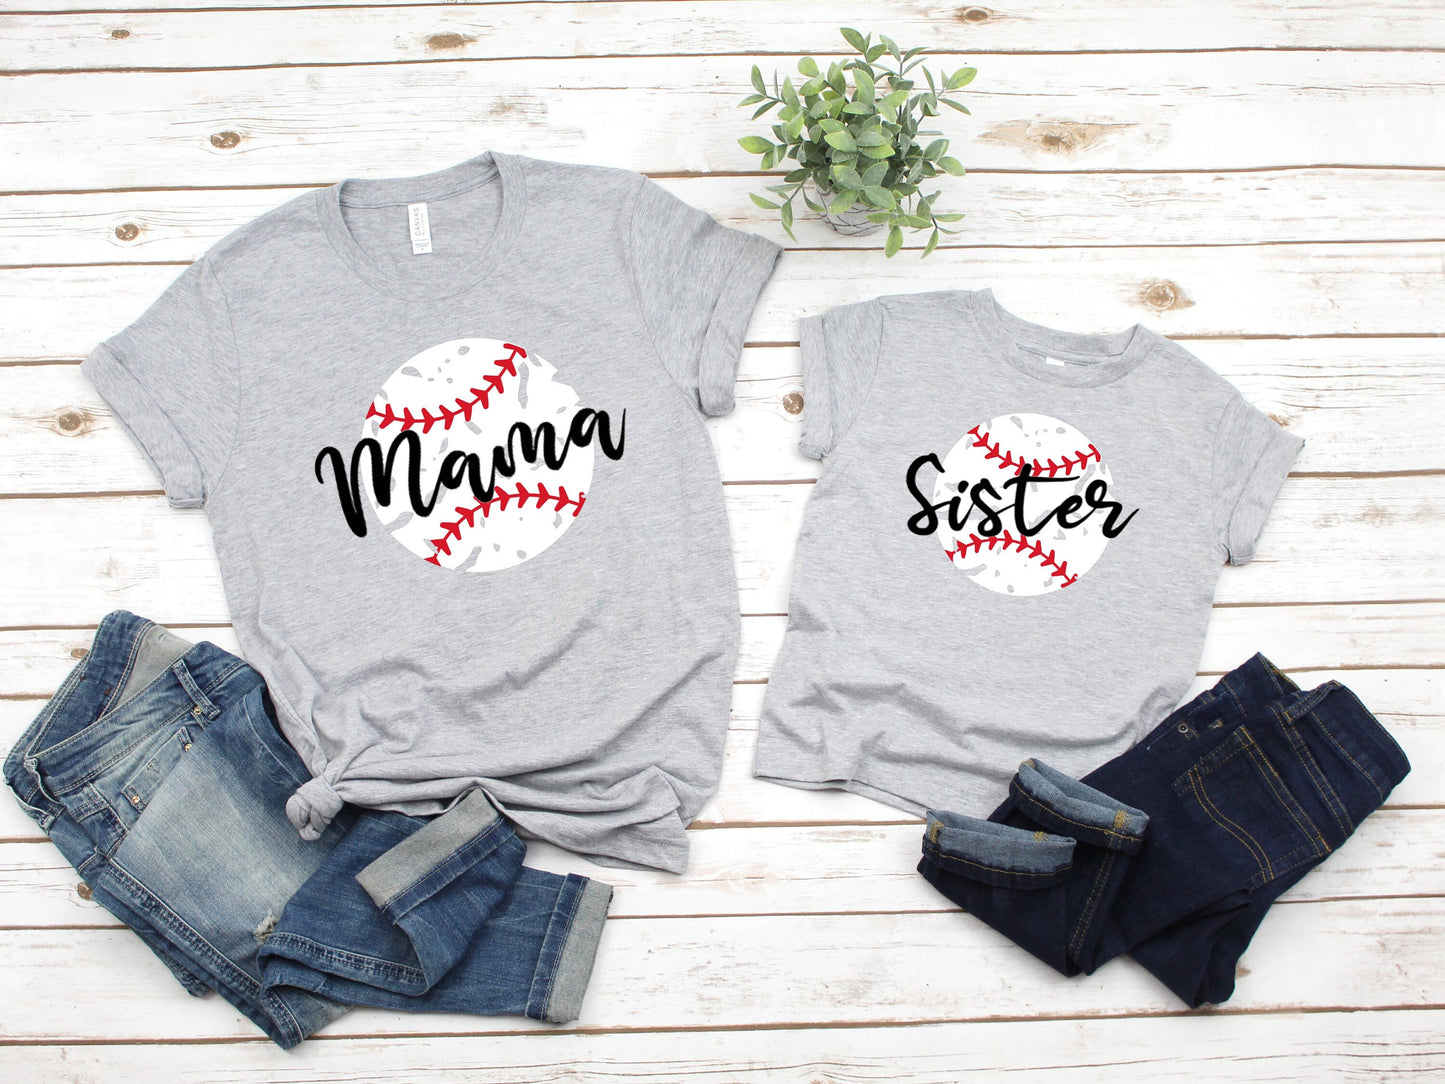 Baseball Family Shirts, Baseball Dad Shirt, Baseball Birthday Family Shirts, Boys Birthday Shirt, Baseball Mama Shirt,Family Baseball Shirts